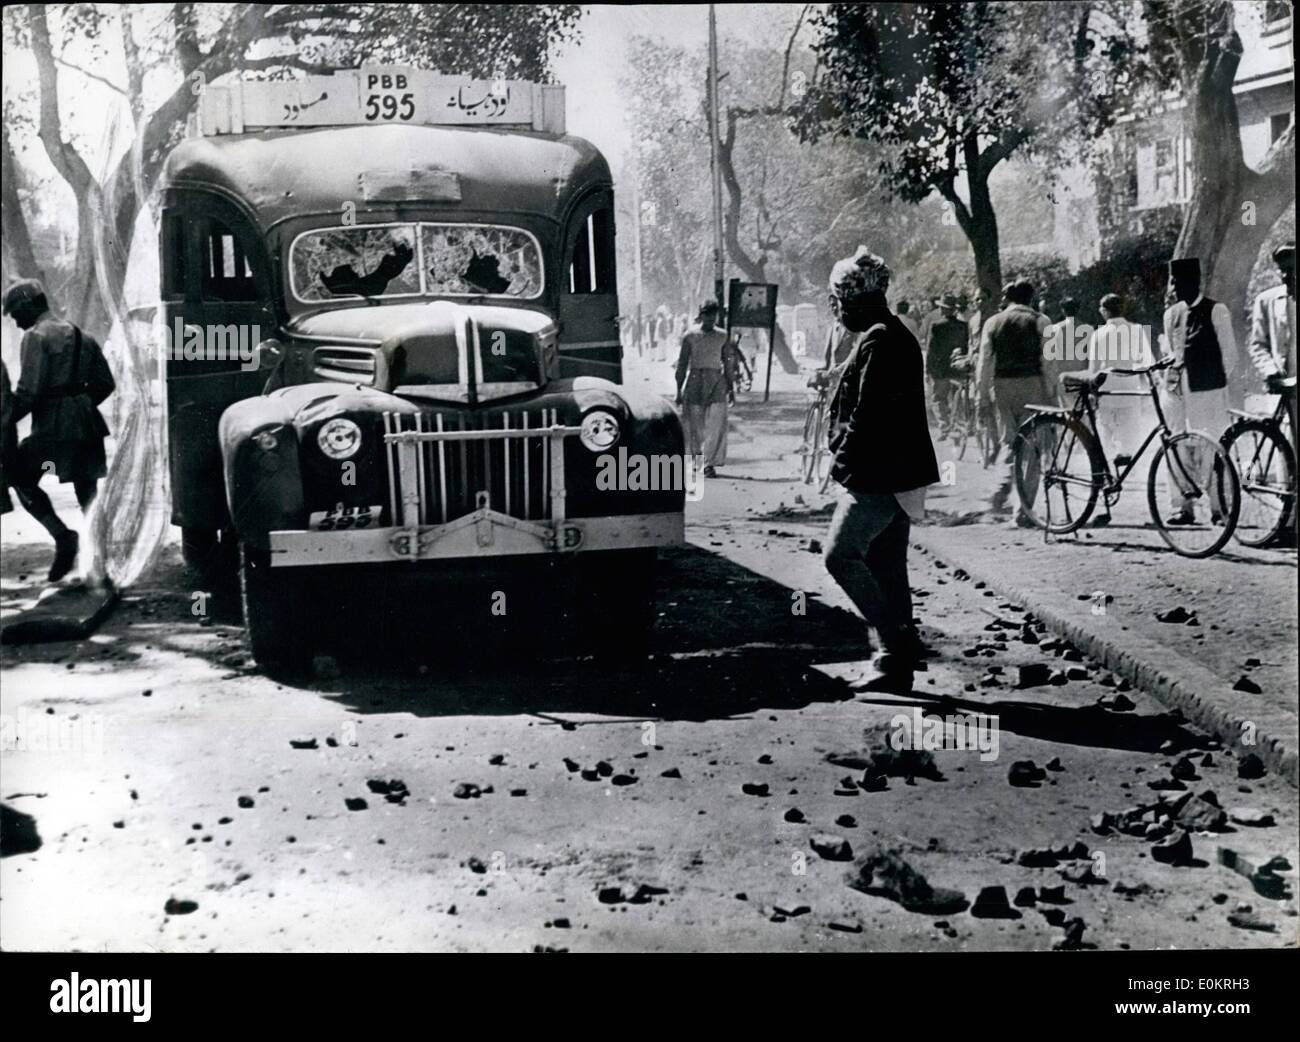 03. März 1947 - Krawalle in Lahore: Nach der jüngsten Einladung des britischen Gouverneurs an den Anführer der MLim League, ein Ministerium i zu gründen, marschierten die Studenten Punjab, Skih und Hindu durch die Straßen von Lahore, Indien, und riefen anti-pakistanische Slogans, und schwenken Schwerter und andere Waffen. Bei den Zusammenstößen wurden 15 Menschen getötet und 114 verletzt. Die Polizei wurde mehrmals gezwungen, das Feuer zu öffnen, und es gab Schlachten auf den Straßen. Foto zeigt: Bild, das gerade aus Indien per Flugzeug aufgenommen wurde, zeigt einen Polizeiwagen, der während der Unruhen in Brand gesetzt wurde Stockfoto